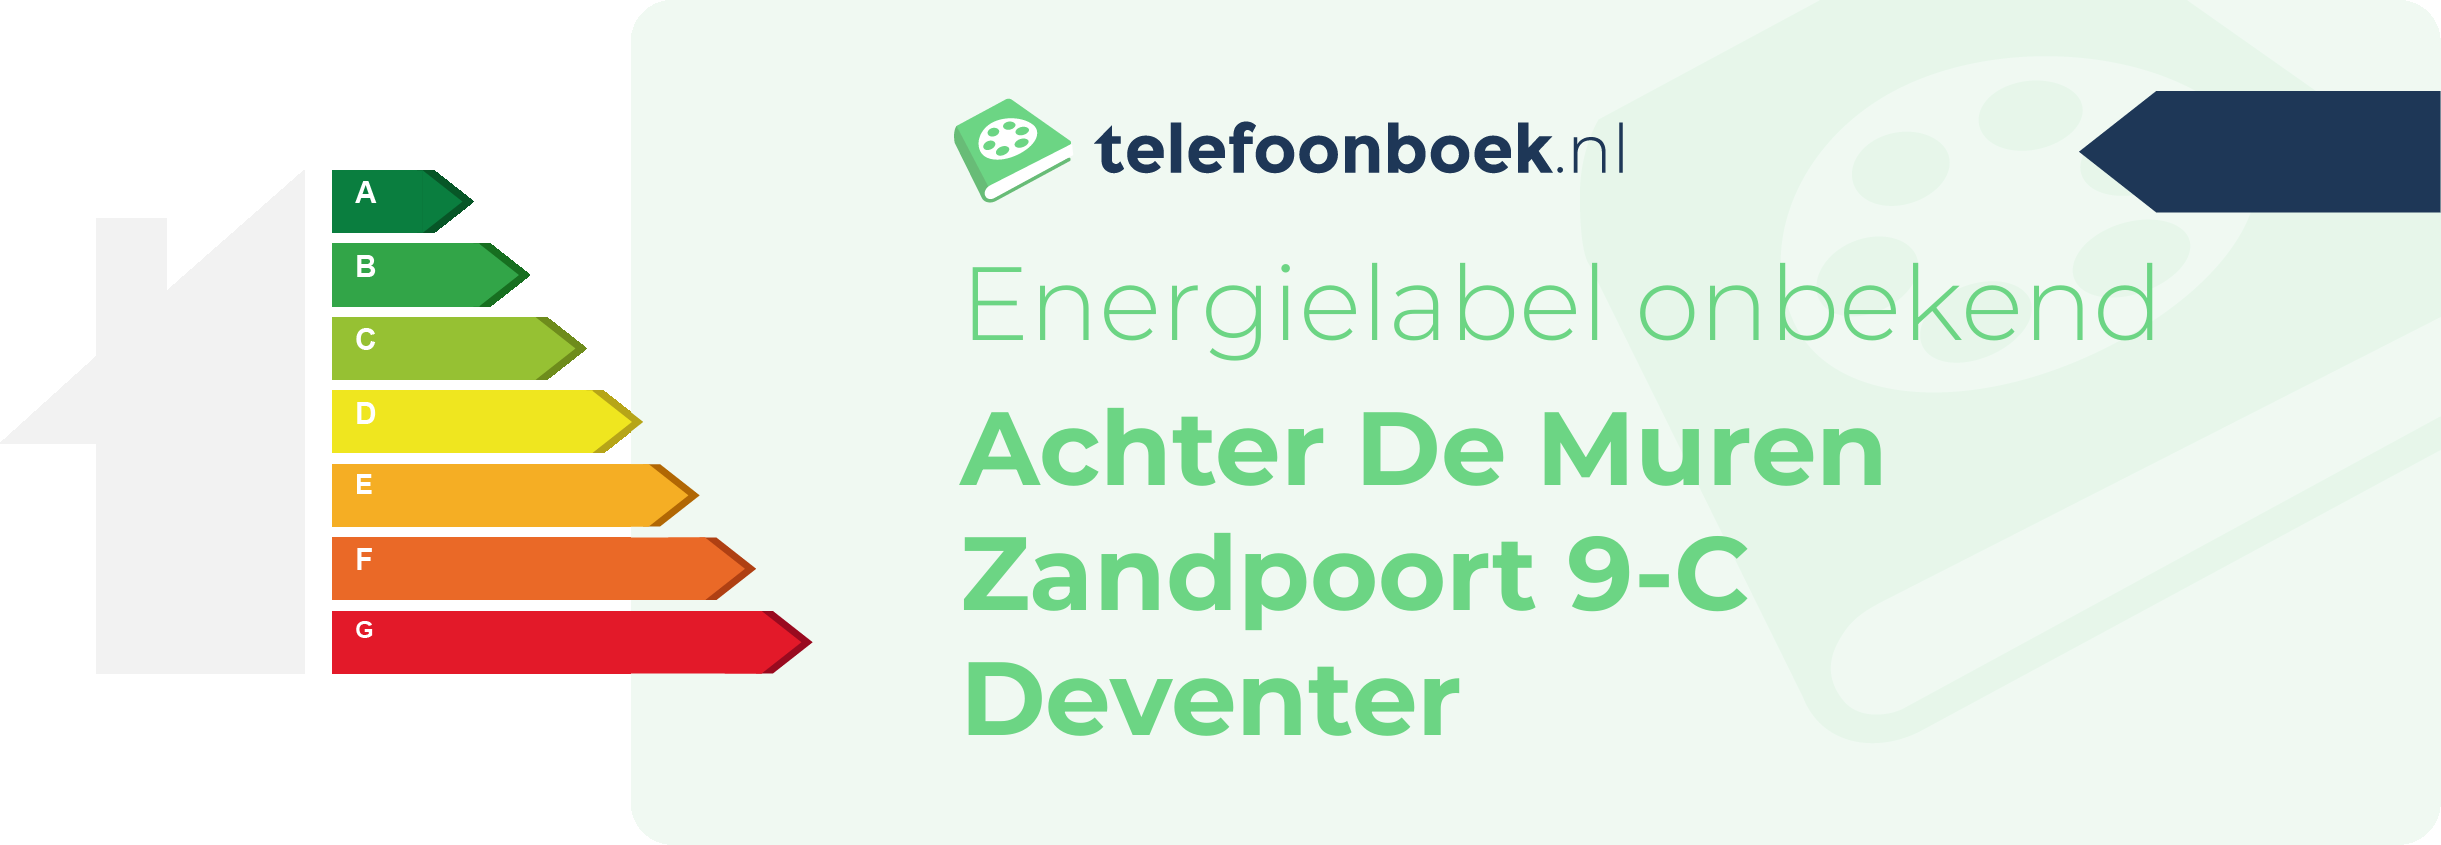 Energielabel Achter De Muren Zandpoort 9-C Deventer